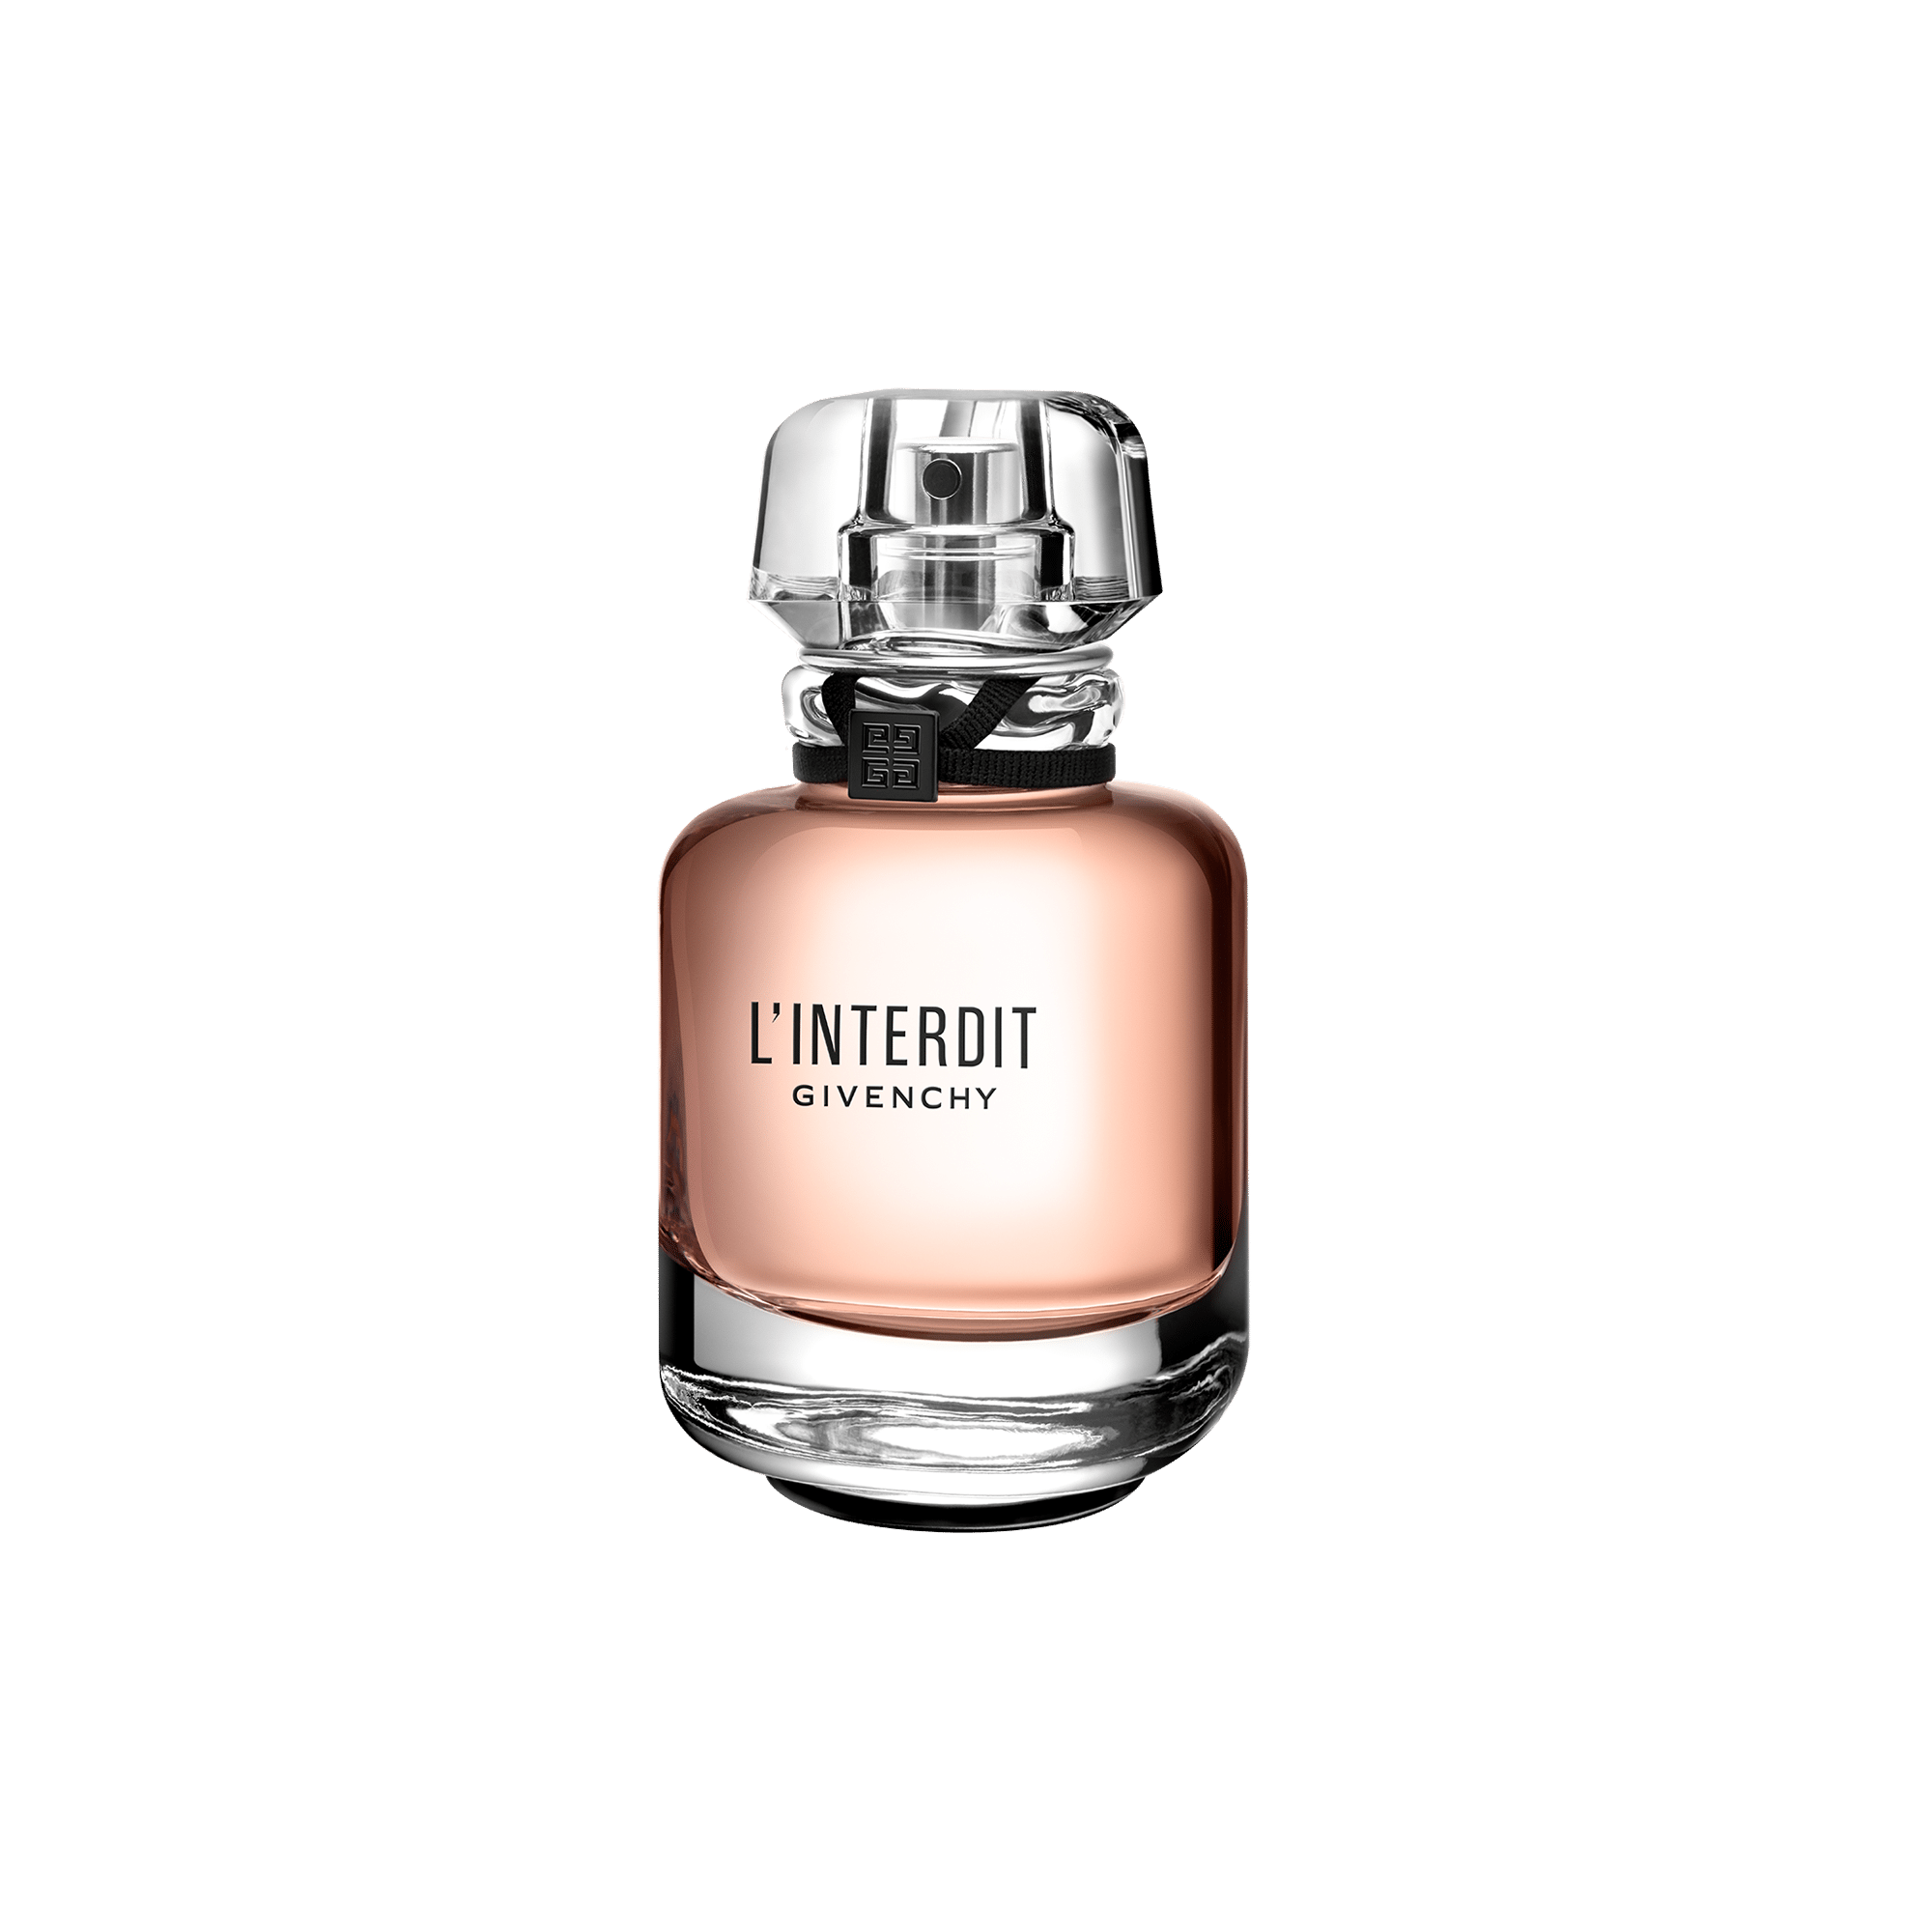 givenchy interdit parfum 2018